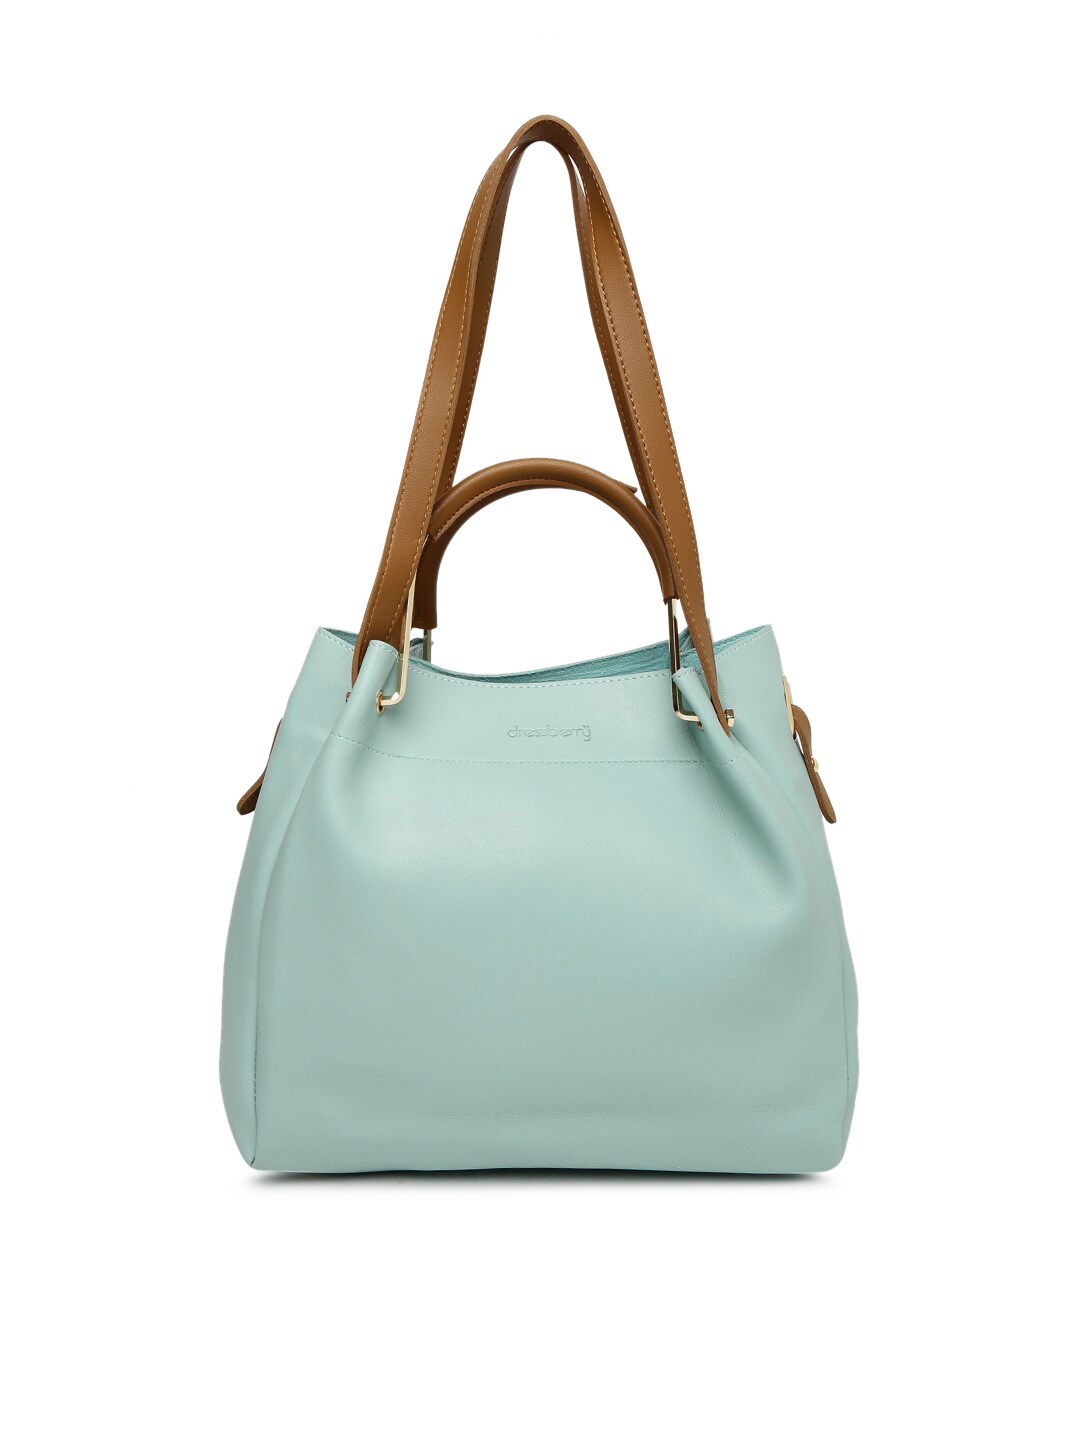 Myntra Branded Handbags | suturasonline.com.br